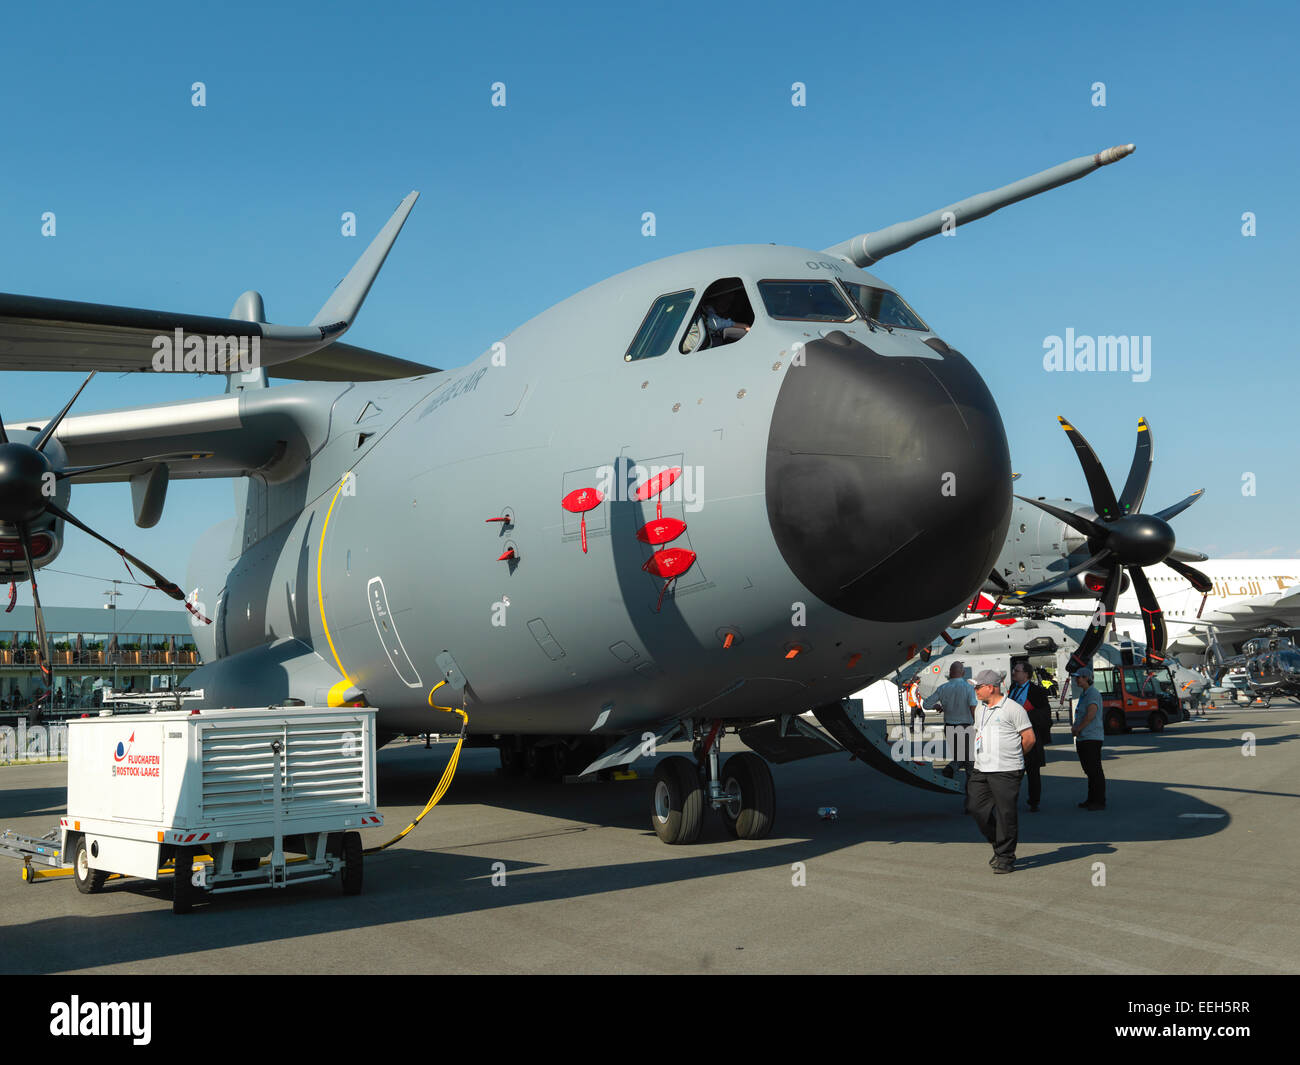 Airbus A400M, avion de transport militaire de l'afficheur pendant le spectacle aérien à Berlin/Allemagne. Photo numérique Hasselblad haute résolution. Banque D'Images